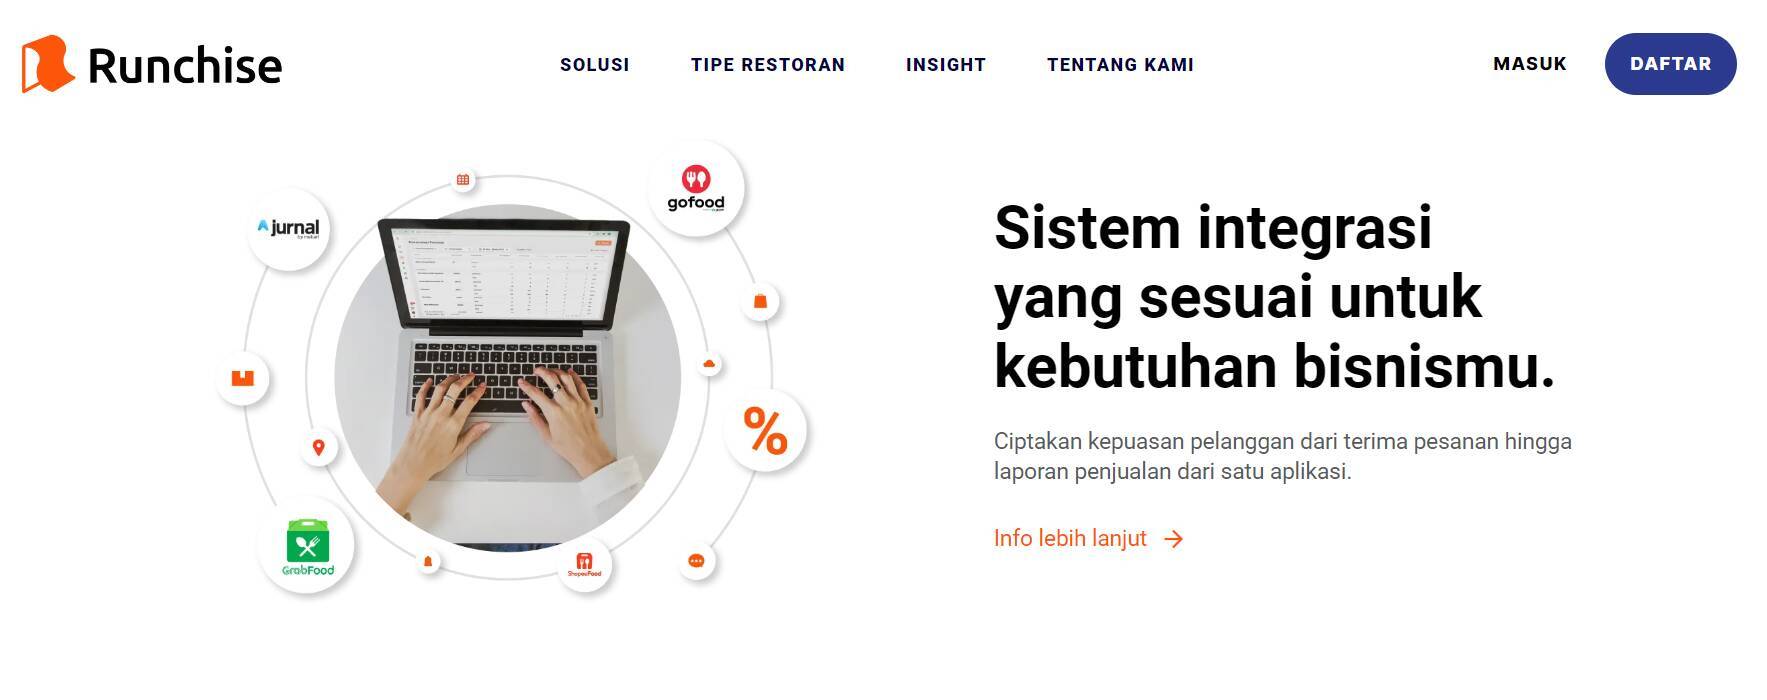 オンライン出前とも連携、インドネシアスタートアップRunchiseの飲食店向けPOSシステム